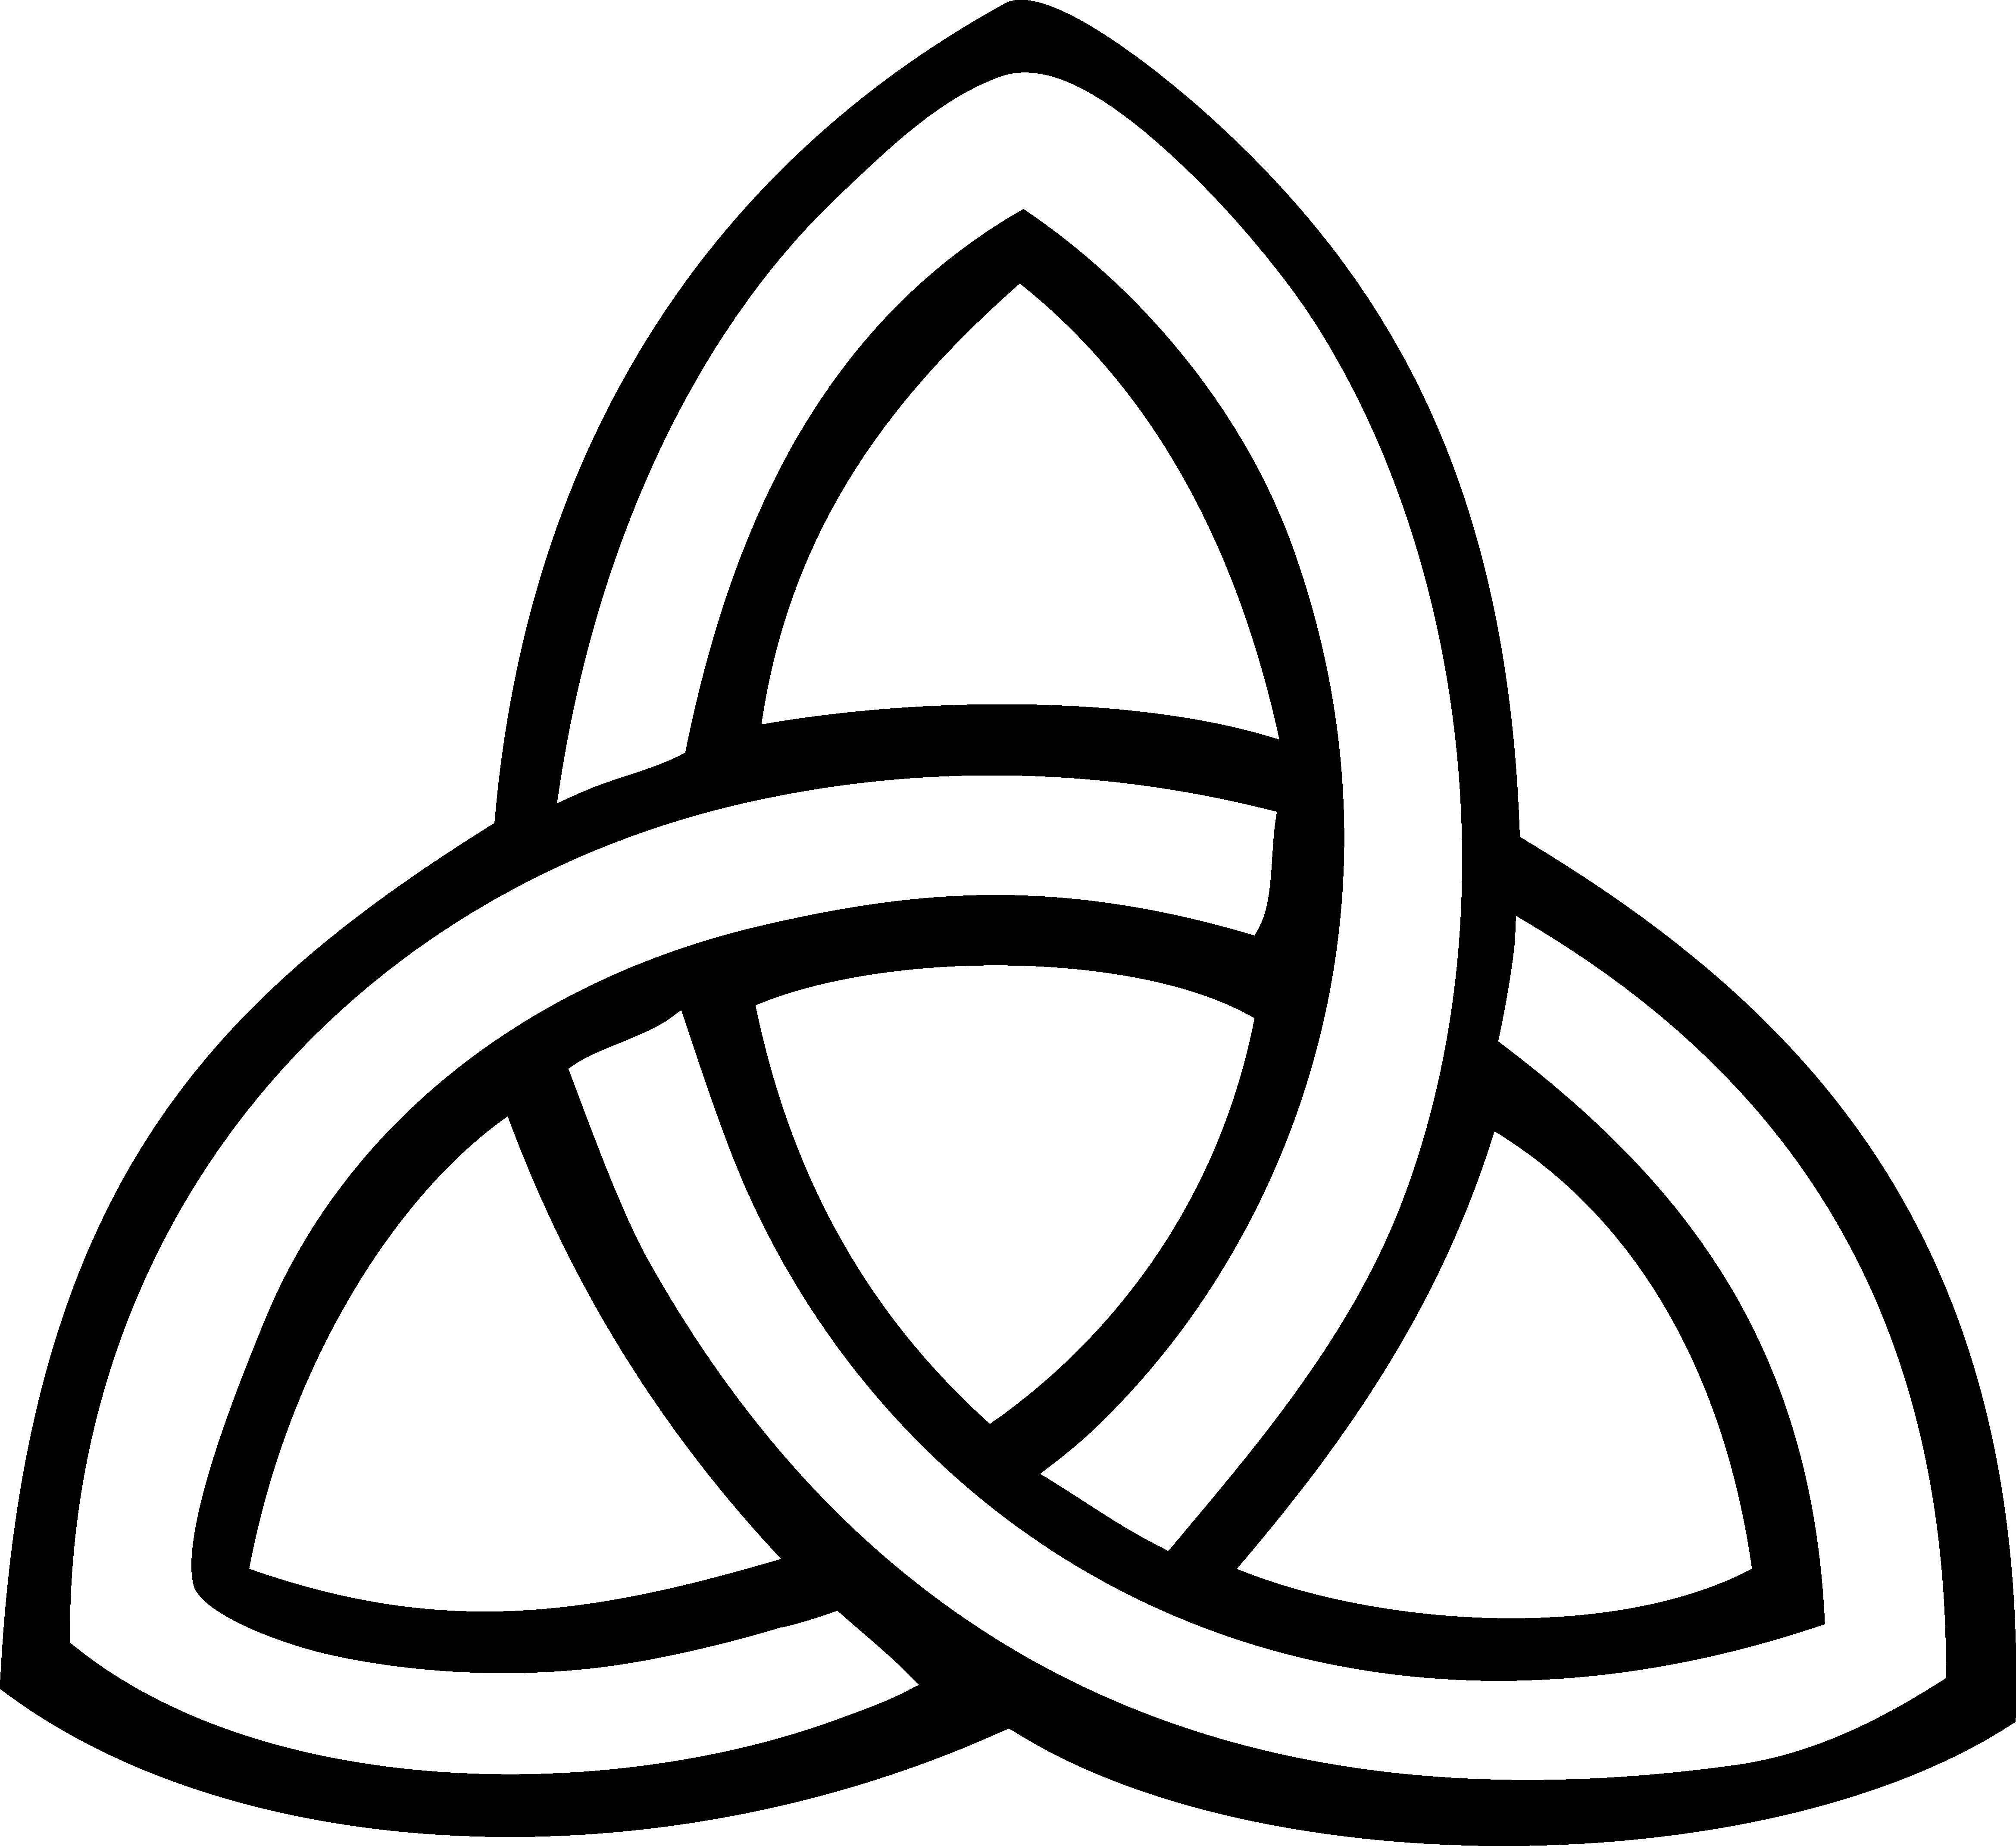 Triquetra Celtic knot Trinity Symbol Clip art - symbol png download ...